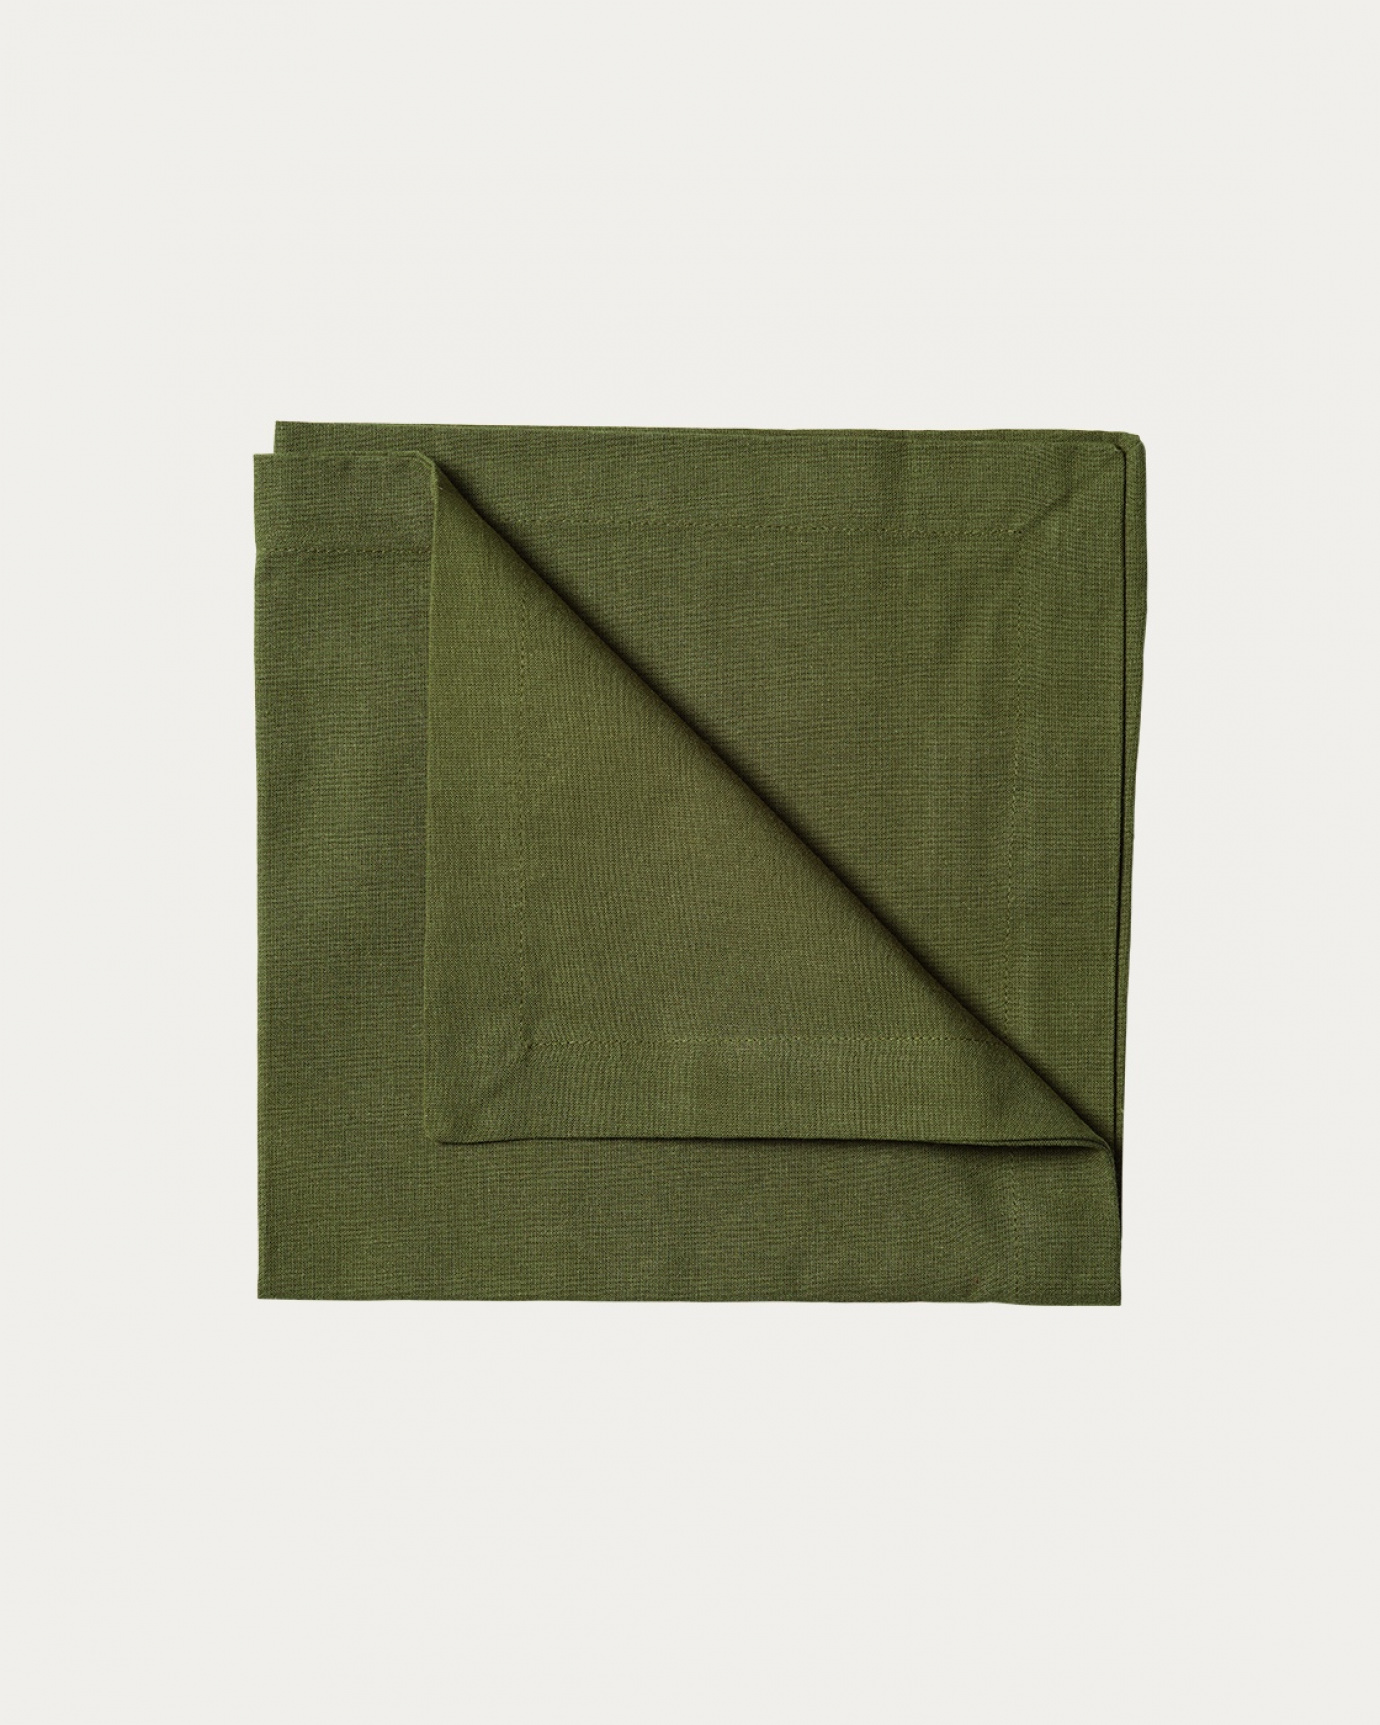 Produktbild mörk olivgrön ROBERT servett av mjuk bomull från LINUM DESIGN. Storlek 45x45 cm och säljs i 4 pack.